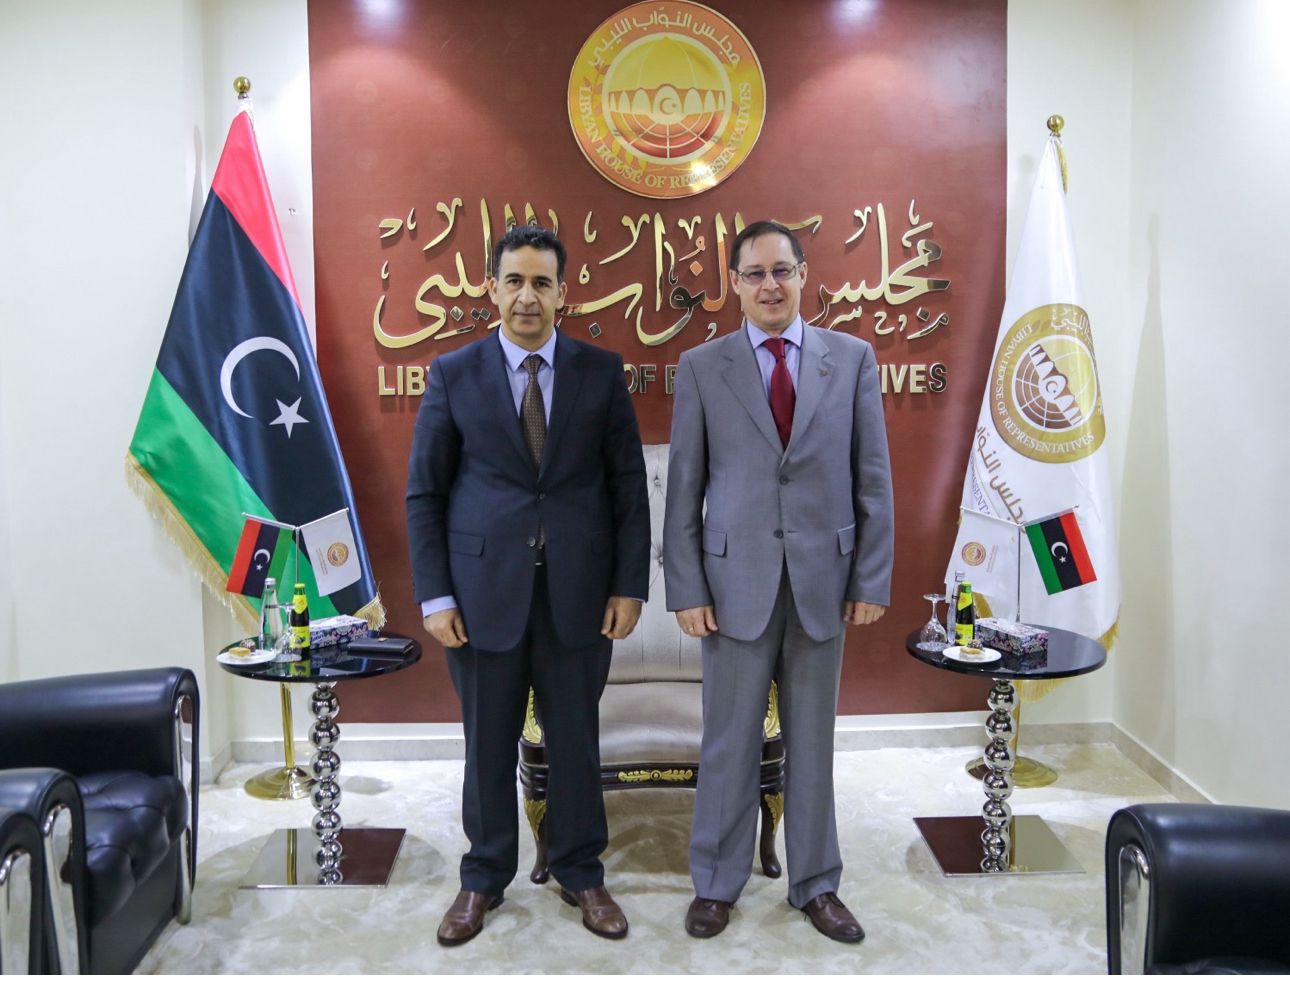 Посол России в Ливии Айдар Аганин (справа) и первый заместитель спикера Палаты представителей Ливии Фаузи ан-Нувайри (слева)